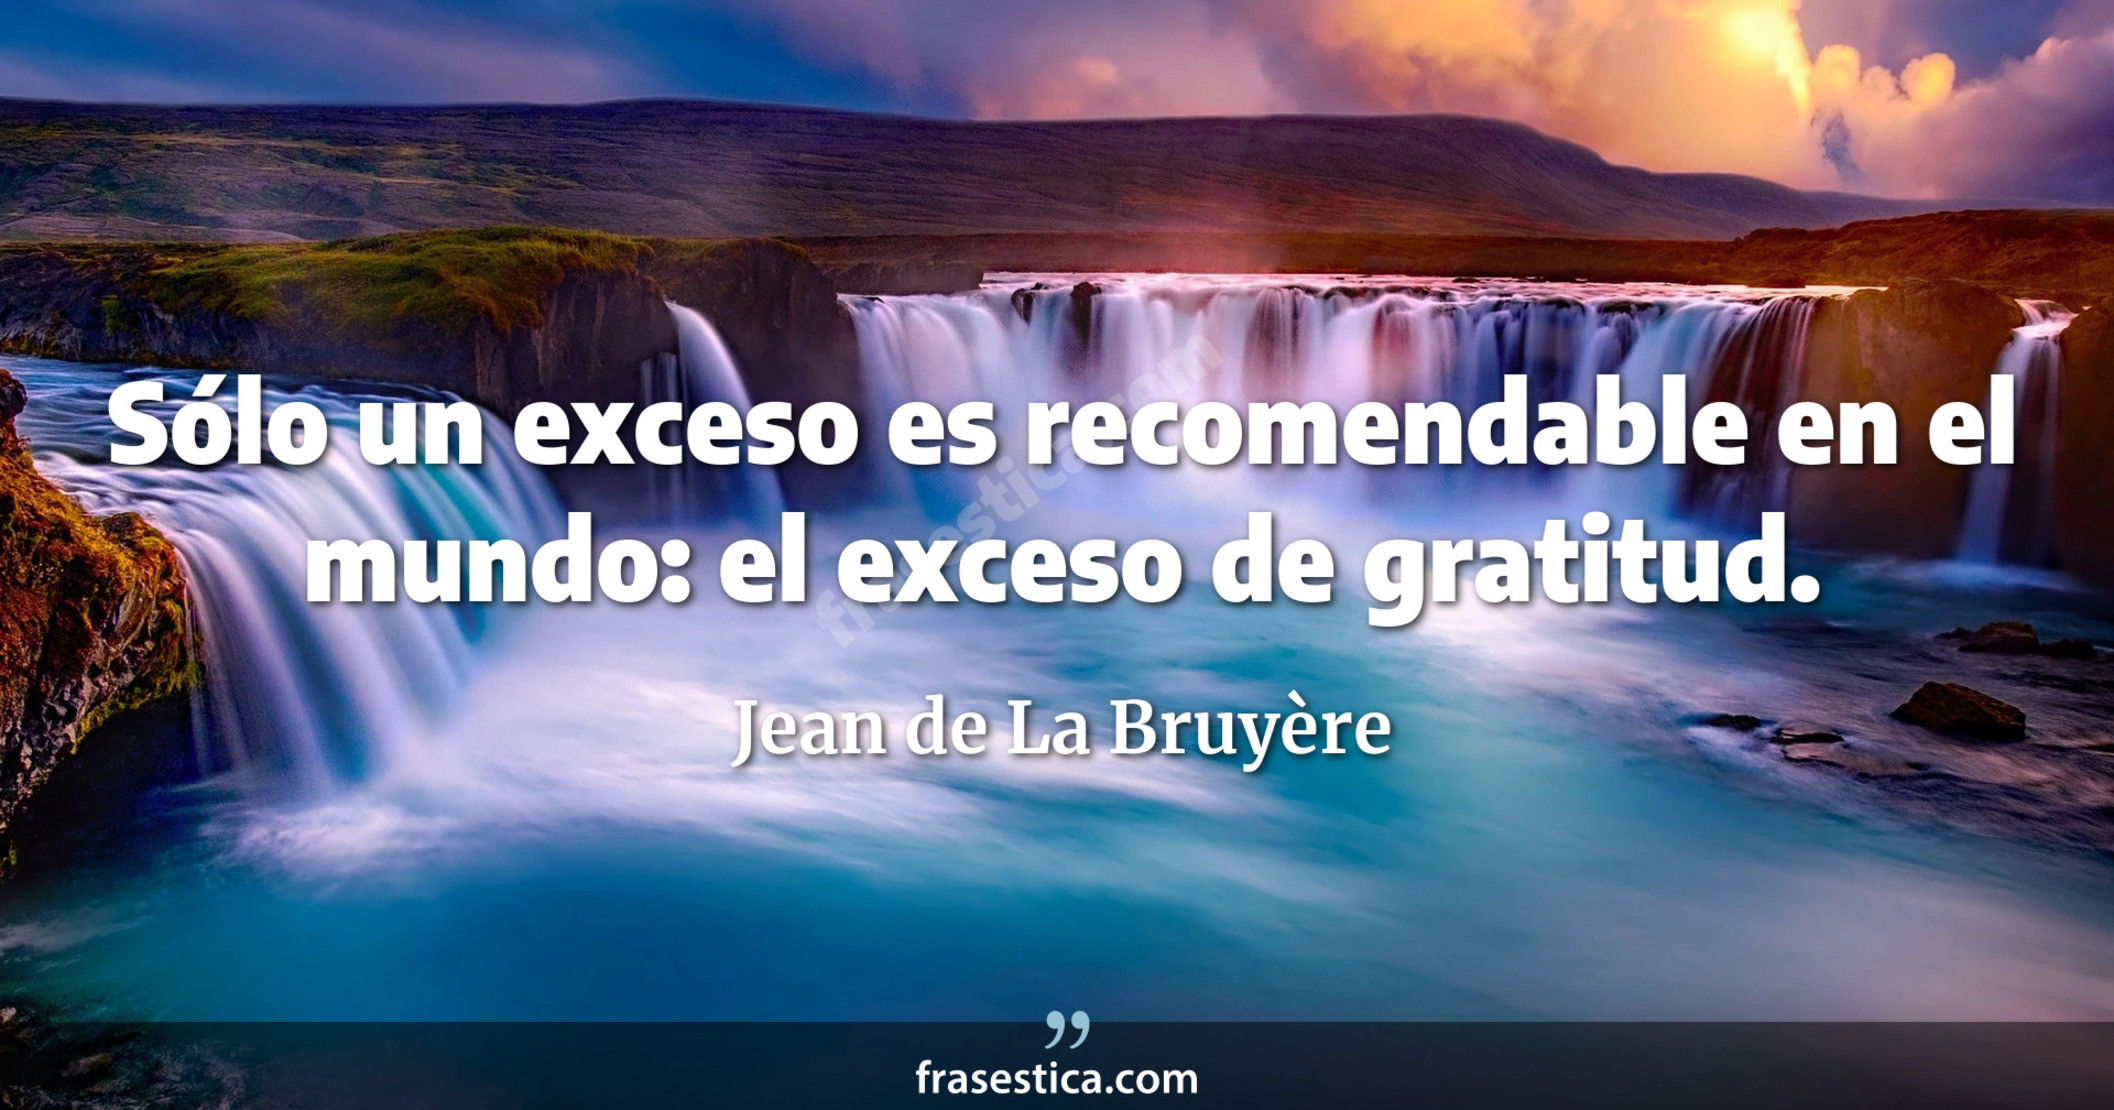 Sólo un exceso es recomendable en el mundo: el exceso de gratitud. - Jean de La Bruyère